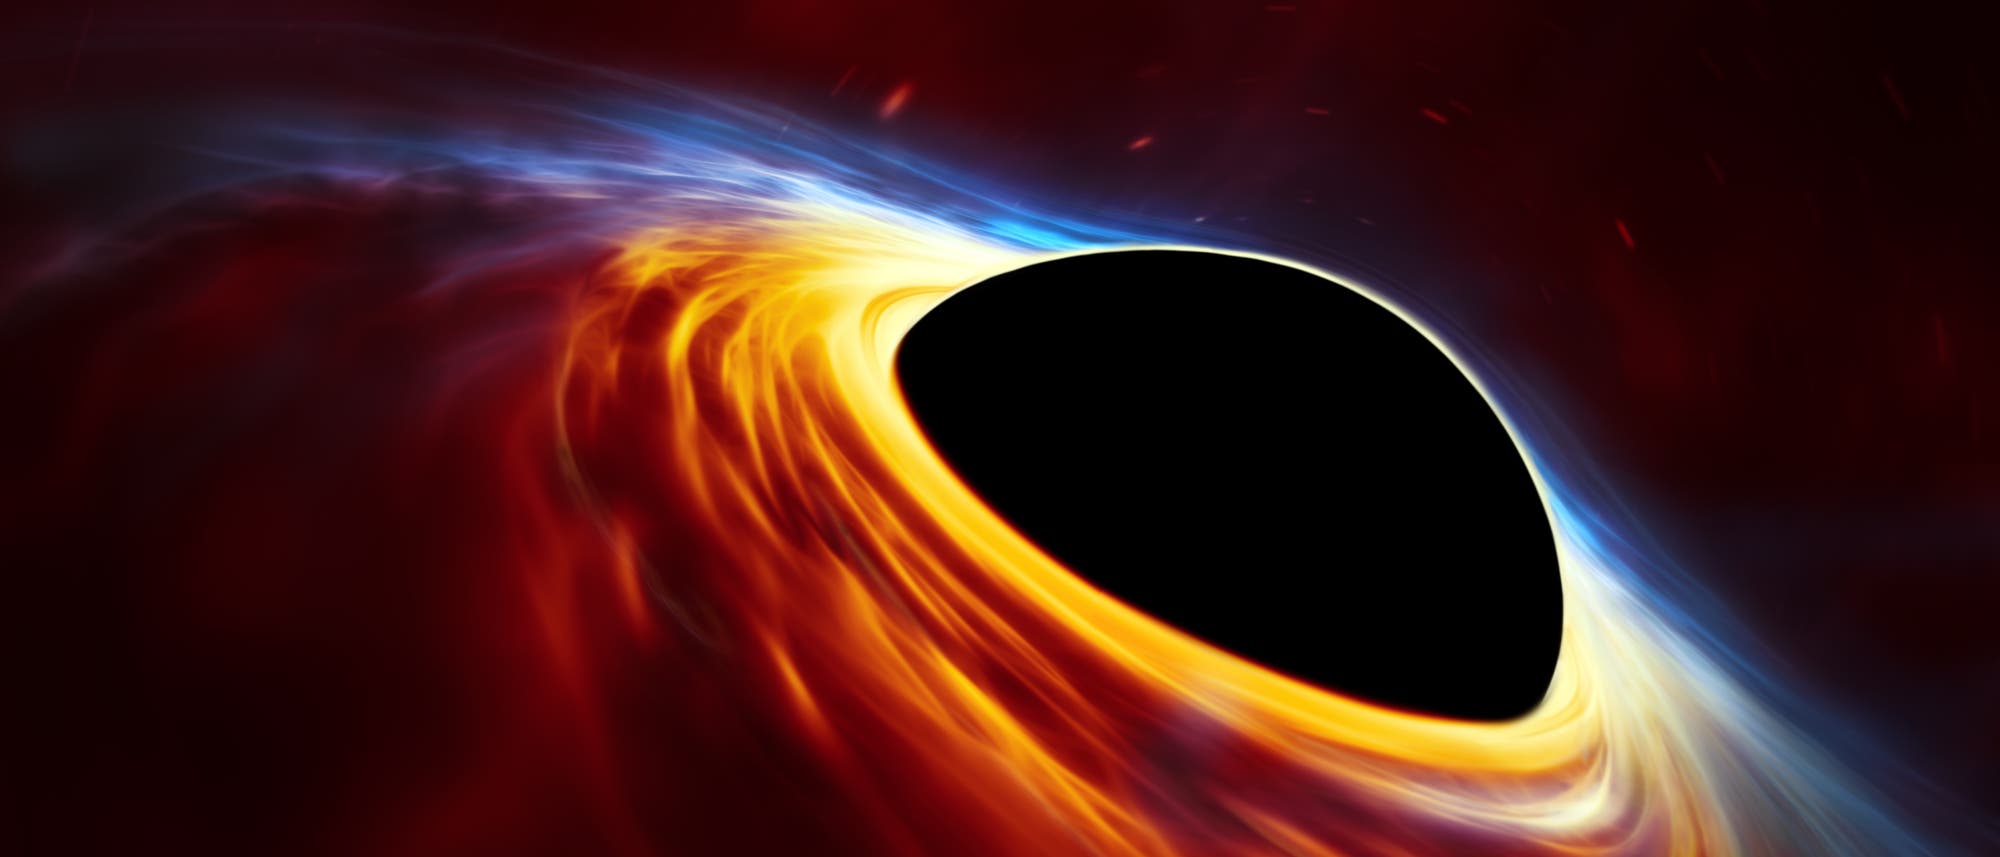 Diese künstlerische Darstellung zeigt ein schnell rotierendes supermassereiches Schwarzes Loch, das von einer Akkretionsscheibe umgeben wird. Diese dünne Scheibe aus rotierender Materie besteht aus den Überresten eines sonnenähnlichen Sterns, der durch die Gezeitenkräfte des Schwarzen Lochs auseinandergerissen wurde.